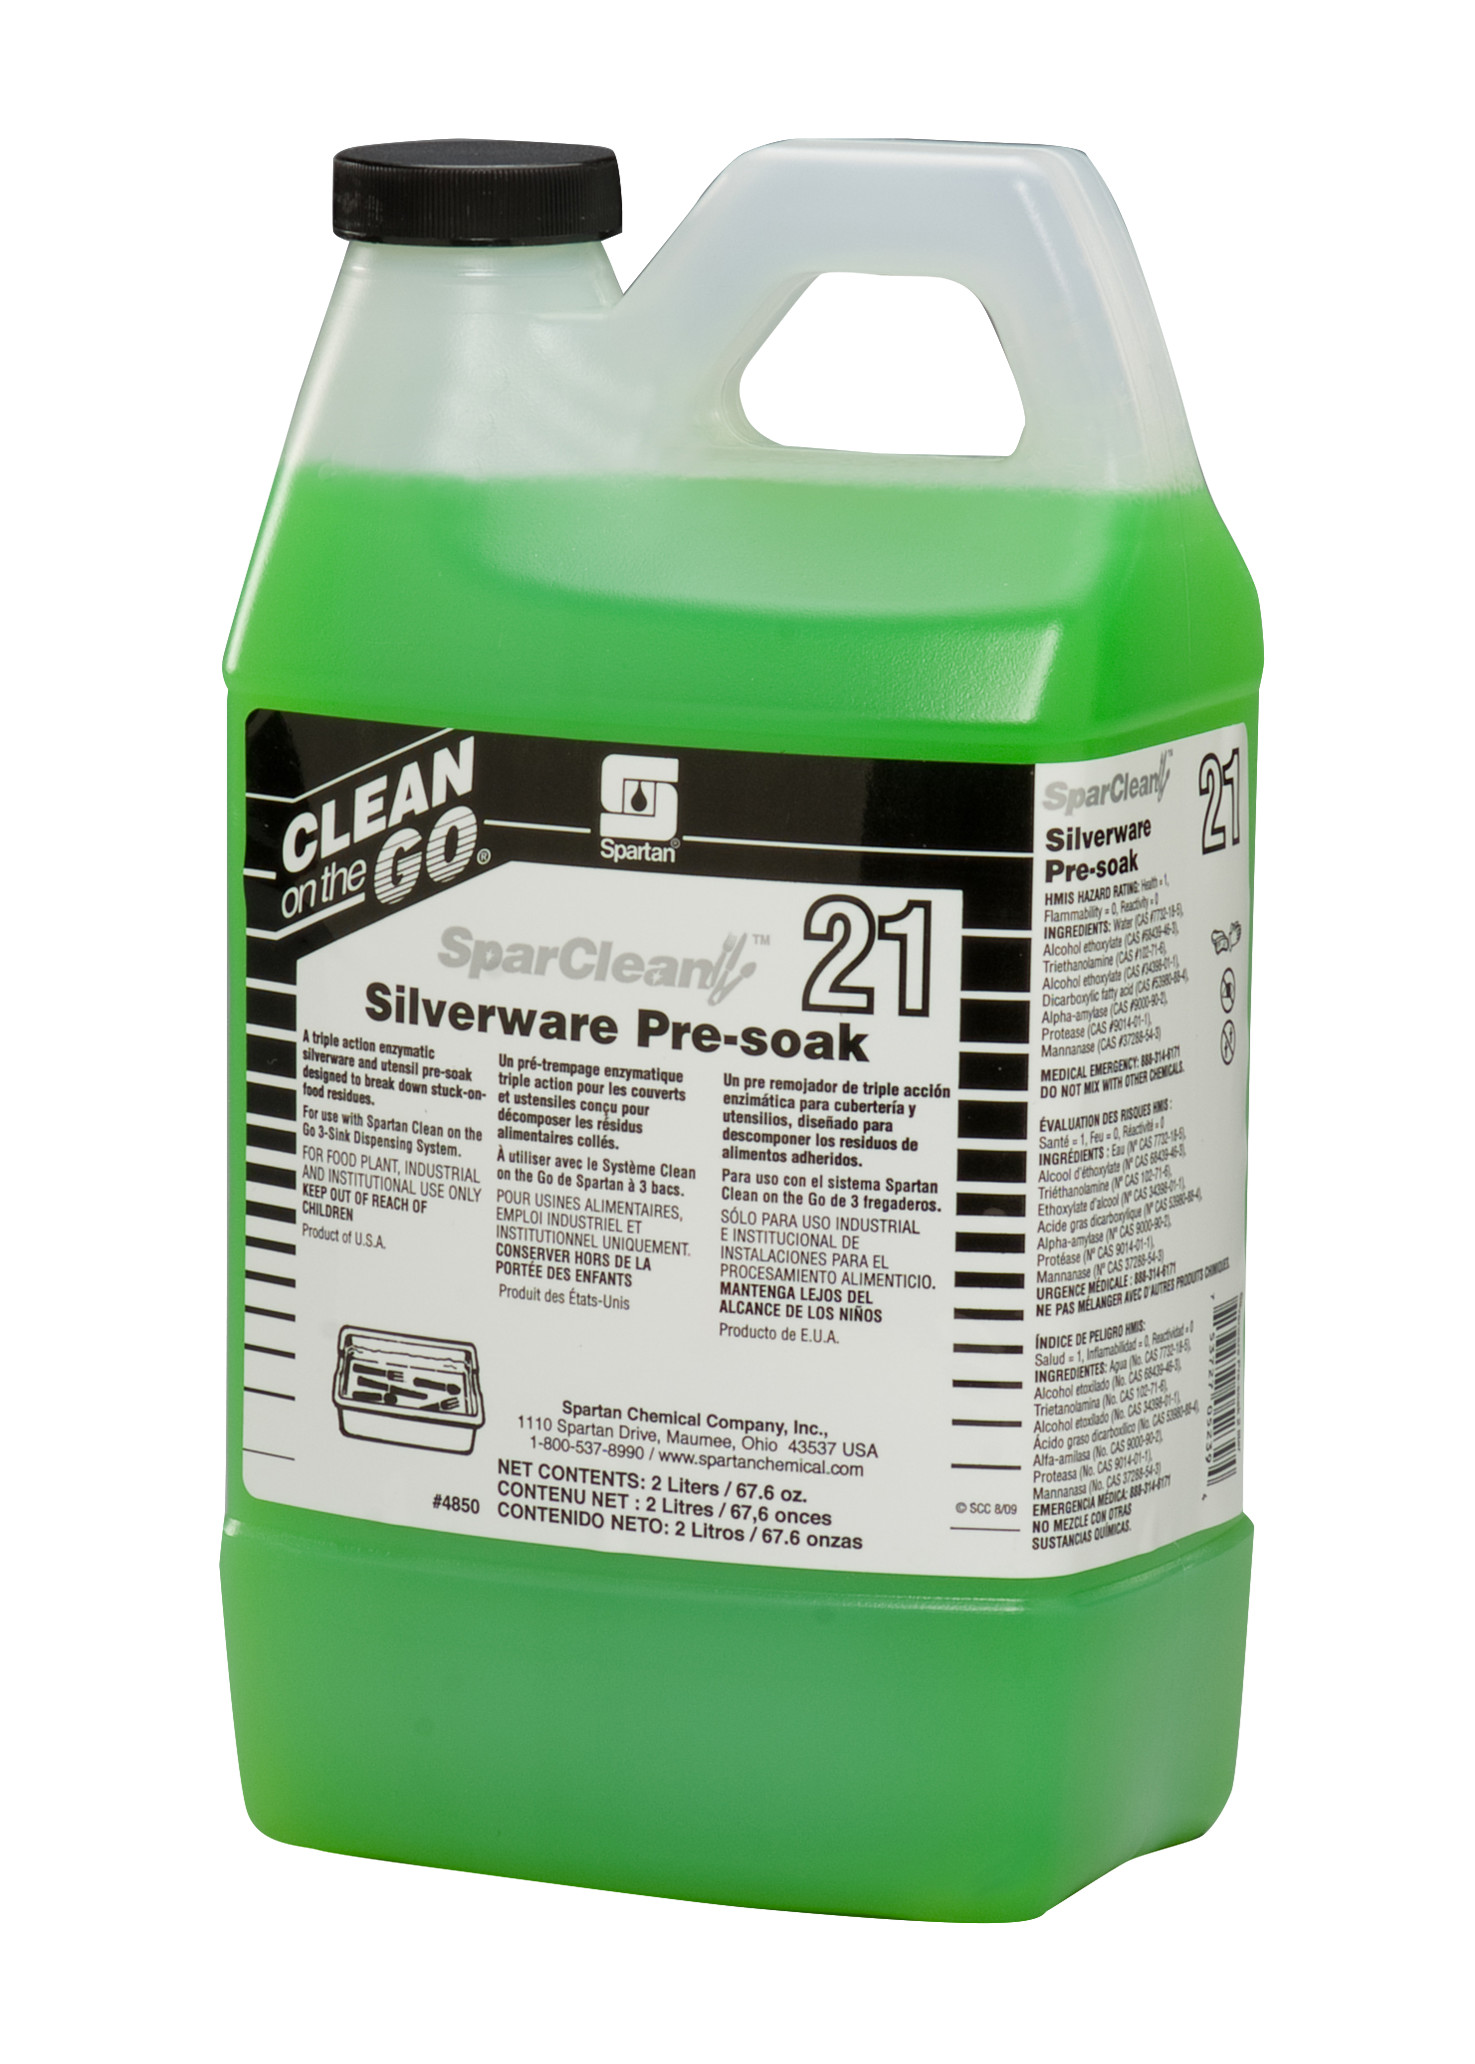 Spartan Chemical Company SparClean Silverware Pre-soak 21, 2 LITER 4/CS